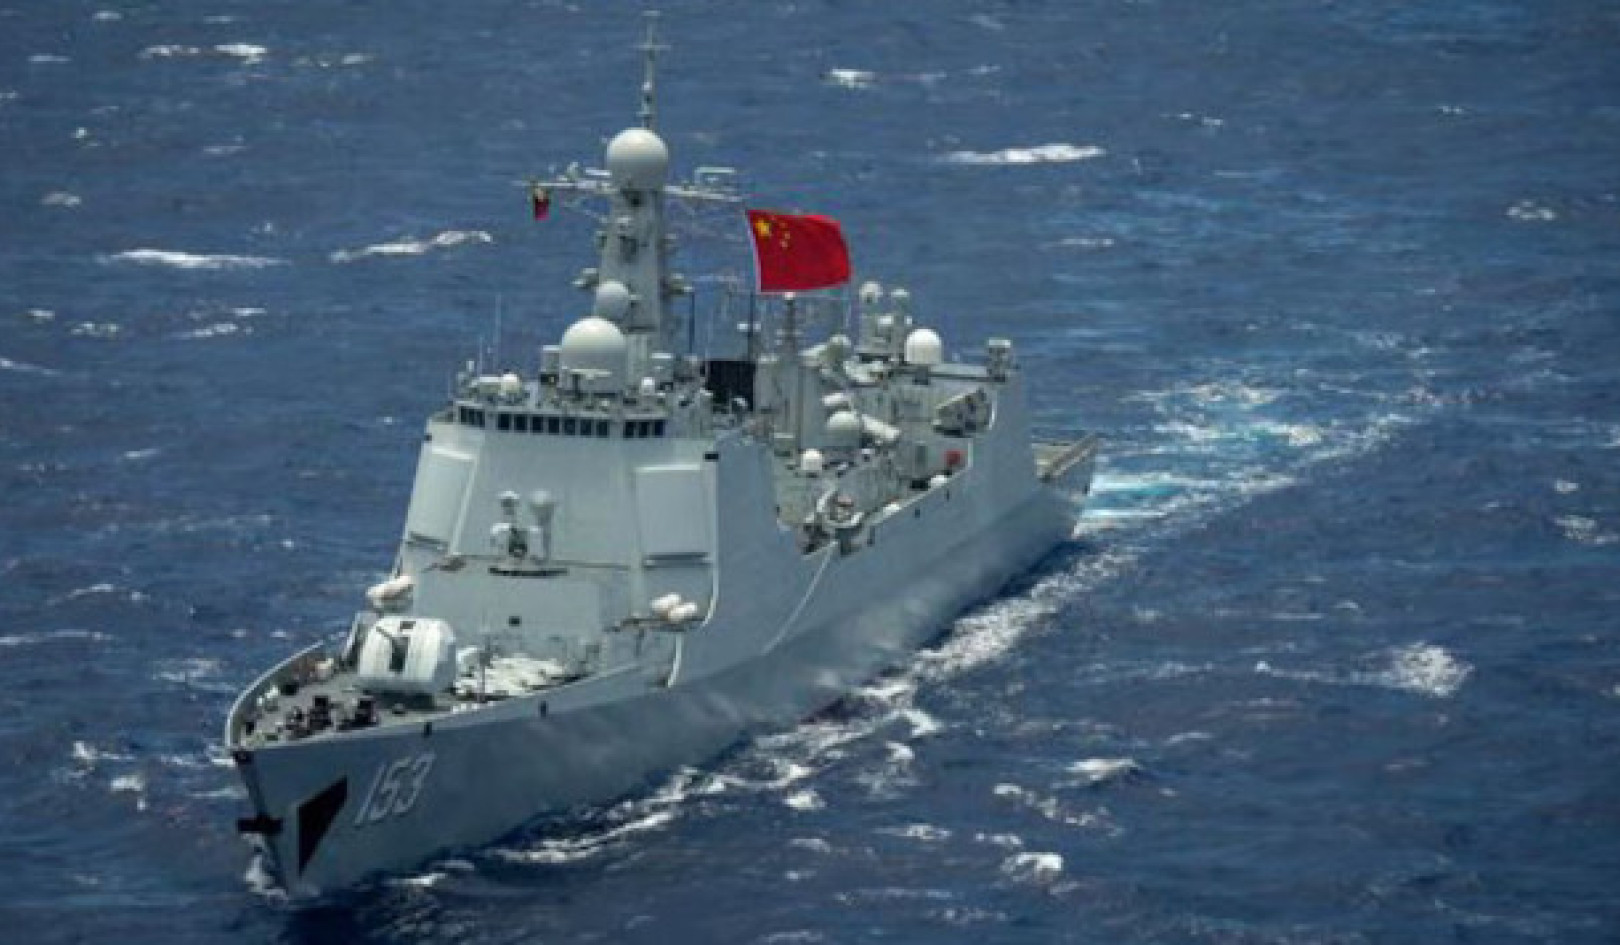 Kinas Sydkinesiska sjöambitioner: Mer än möter ögat